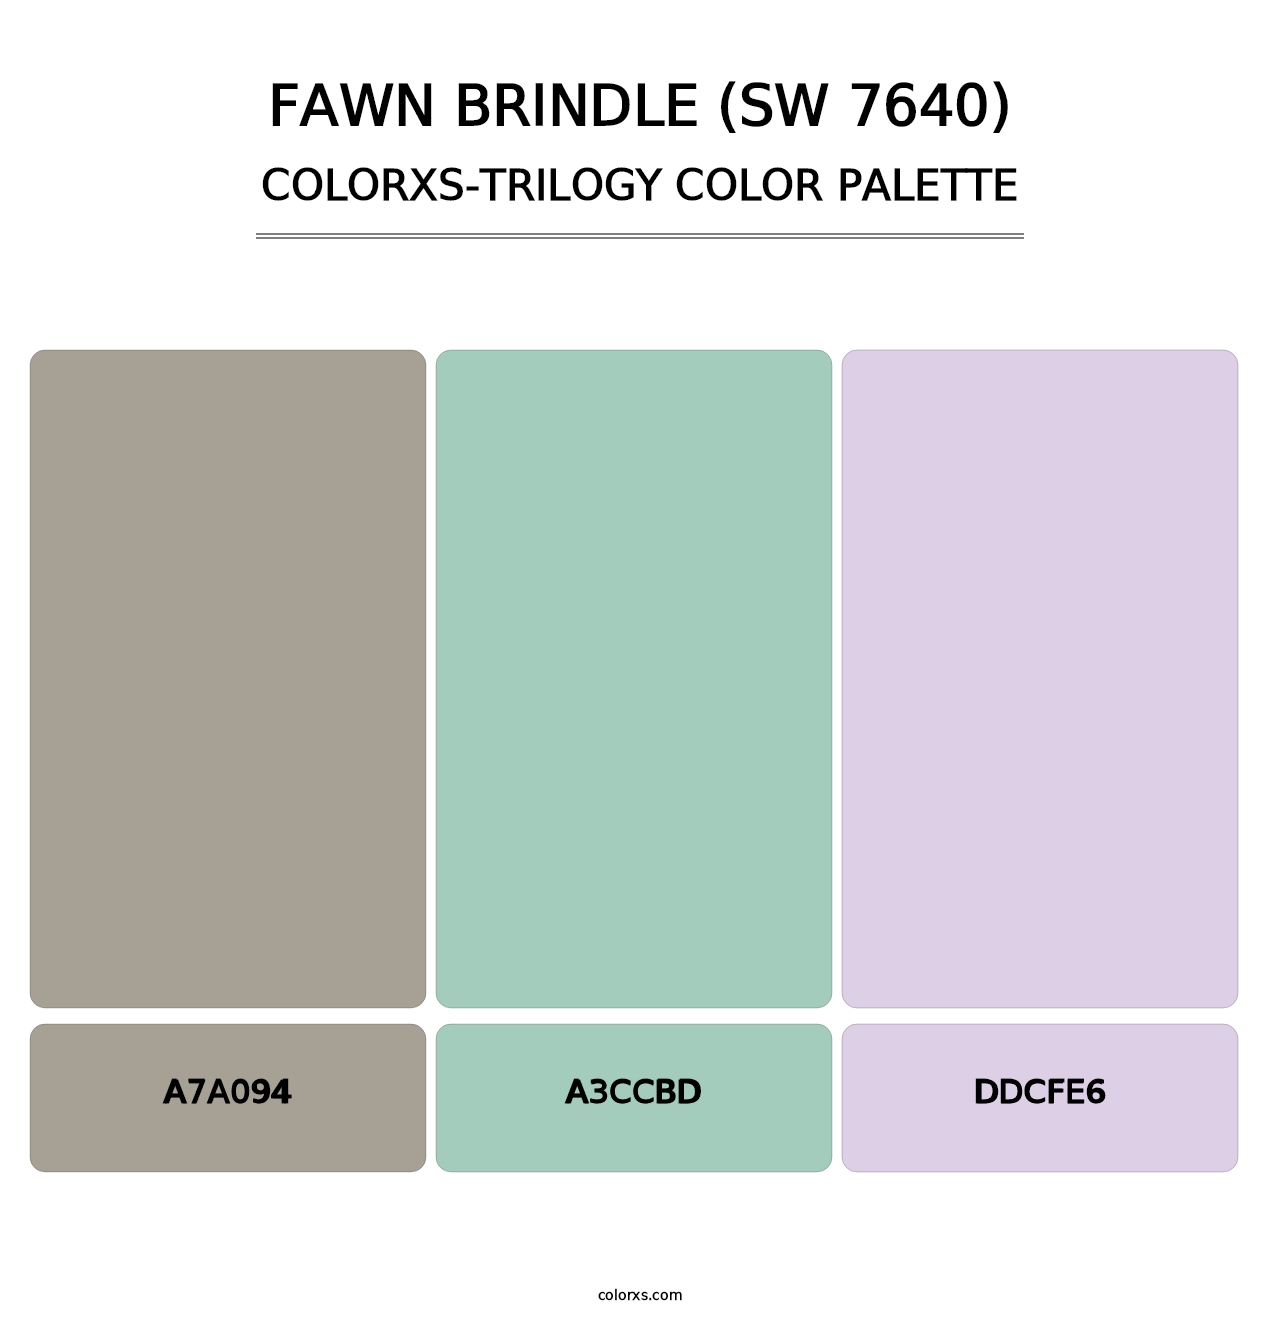 Fawn Brindle (SW 7640) - Colorxs Trilogy Palette